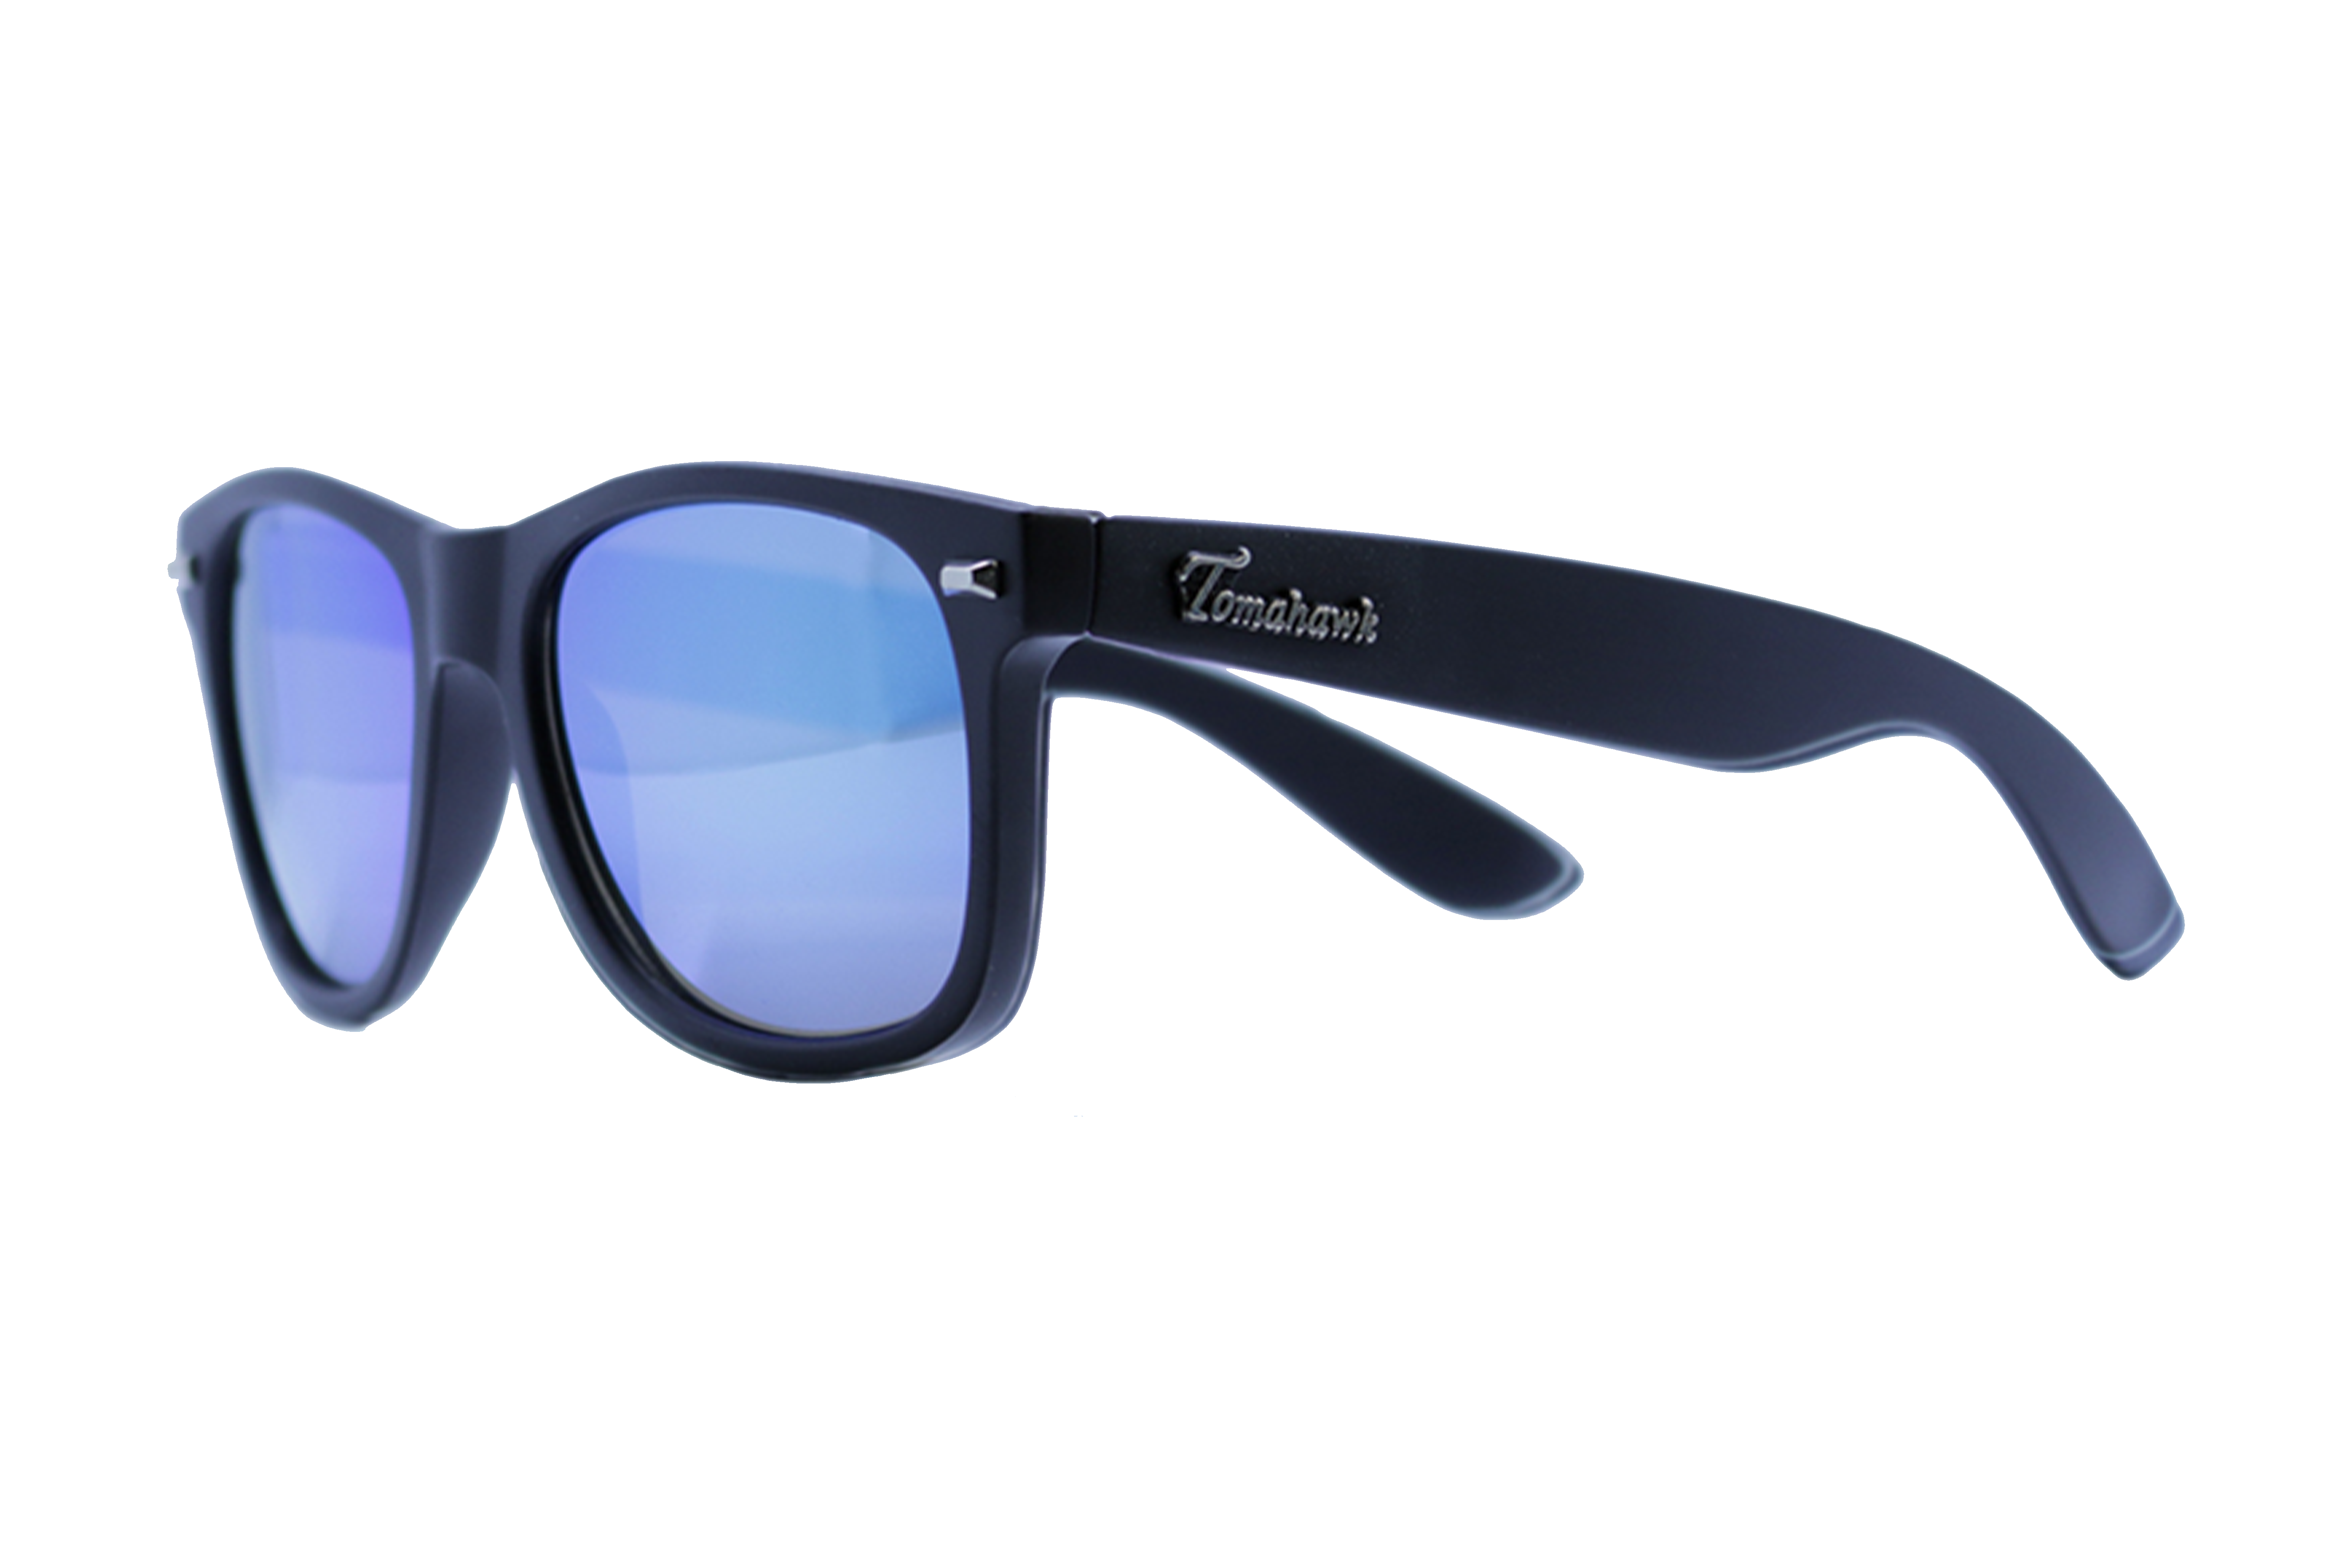 Tomahawk Shades Elite Class Sunglasses for Men & Women - Impact Resistant Lenses & Full UV400 Protection